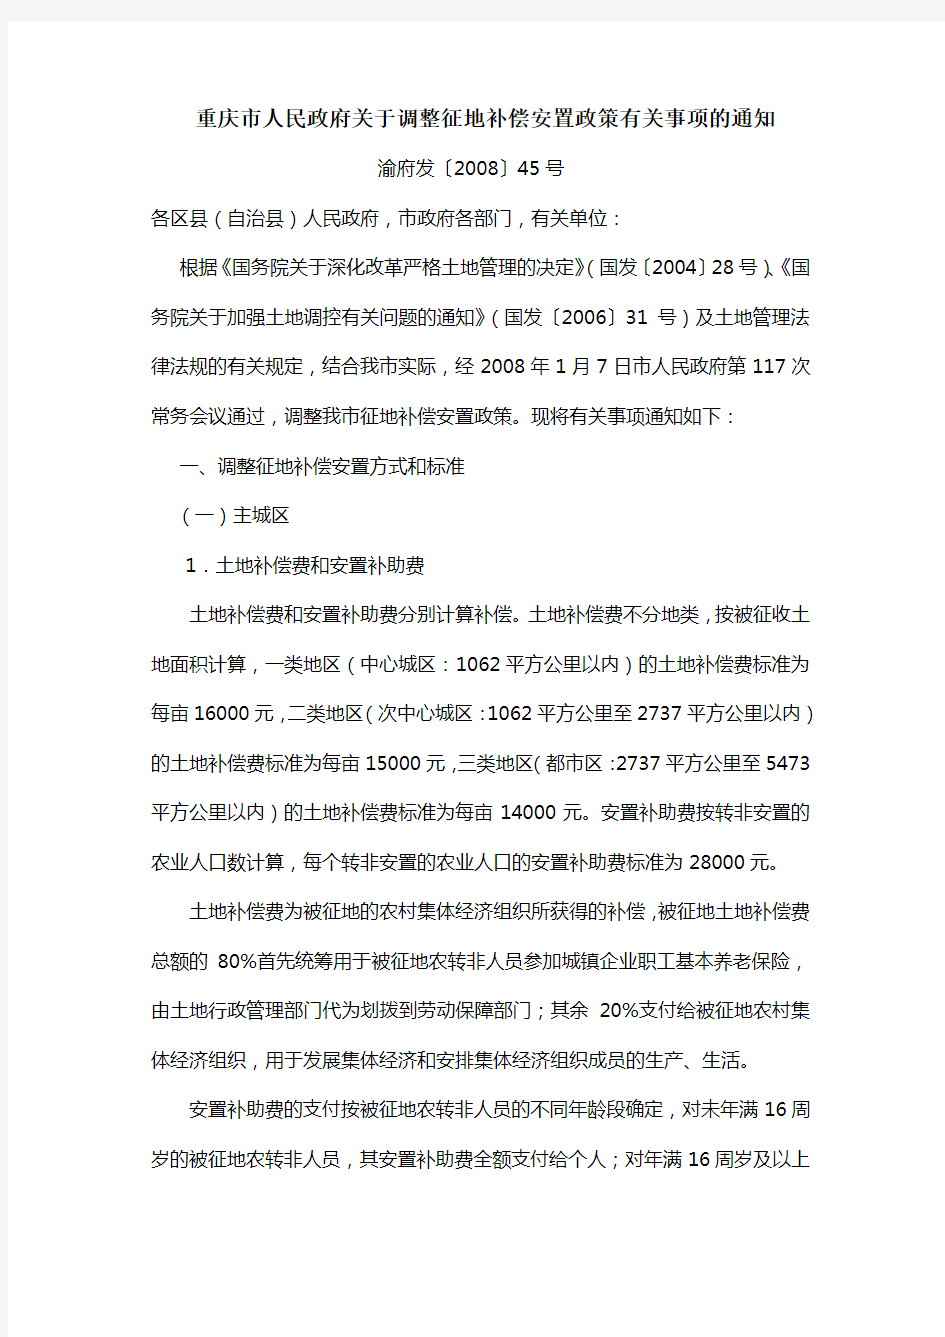 重庆市人民政府关于调整征地补偿安置政策有关事项的通知渝府发〔2008〕45号